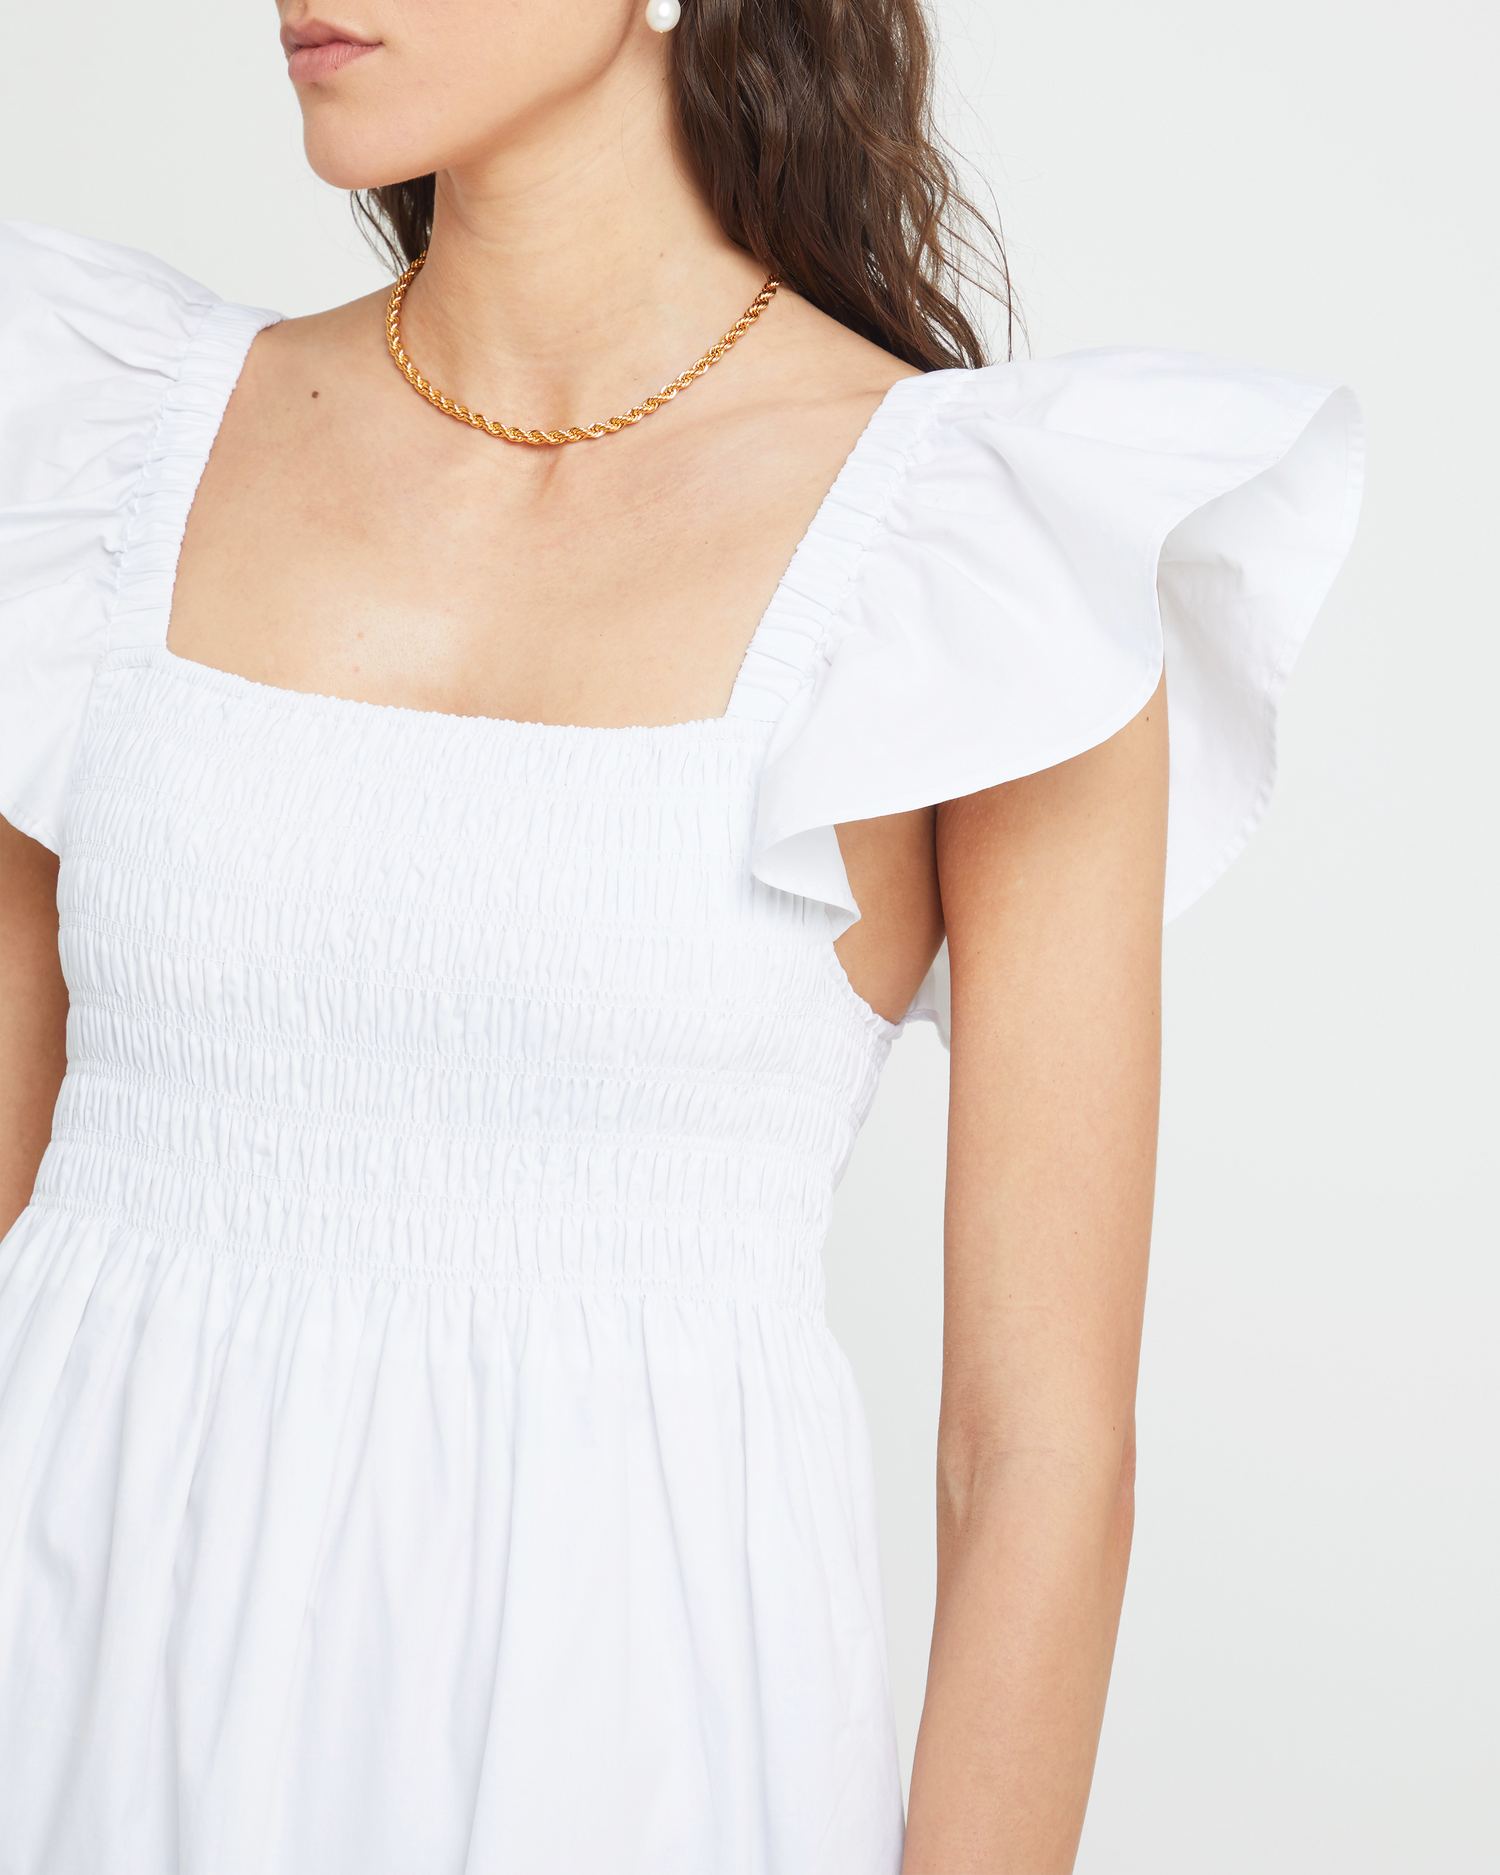 Sixth image of Tuscany Dress, a white maxi dress, smocked bodice, ruffled cap sleeves, pockets